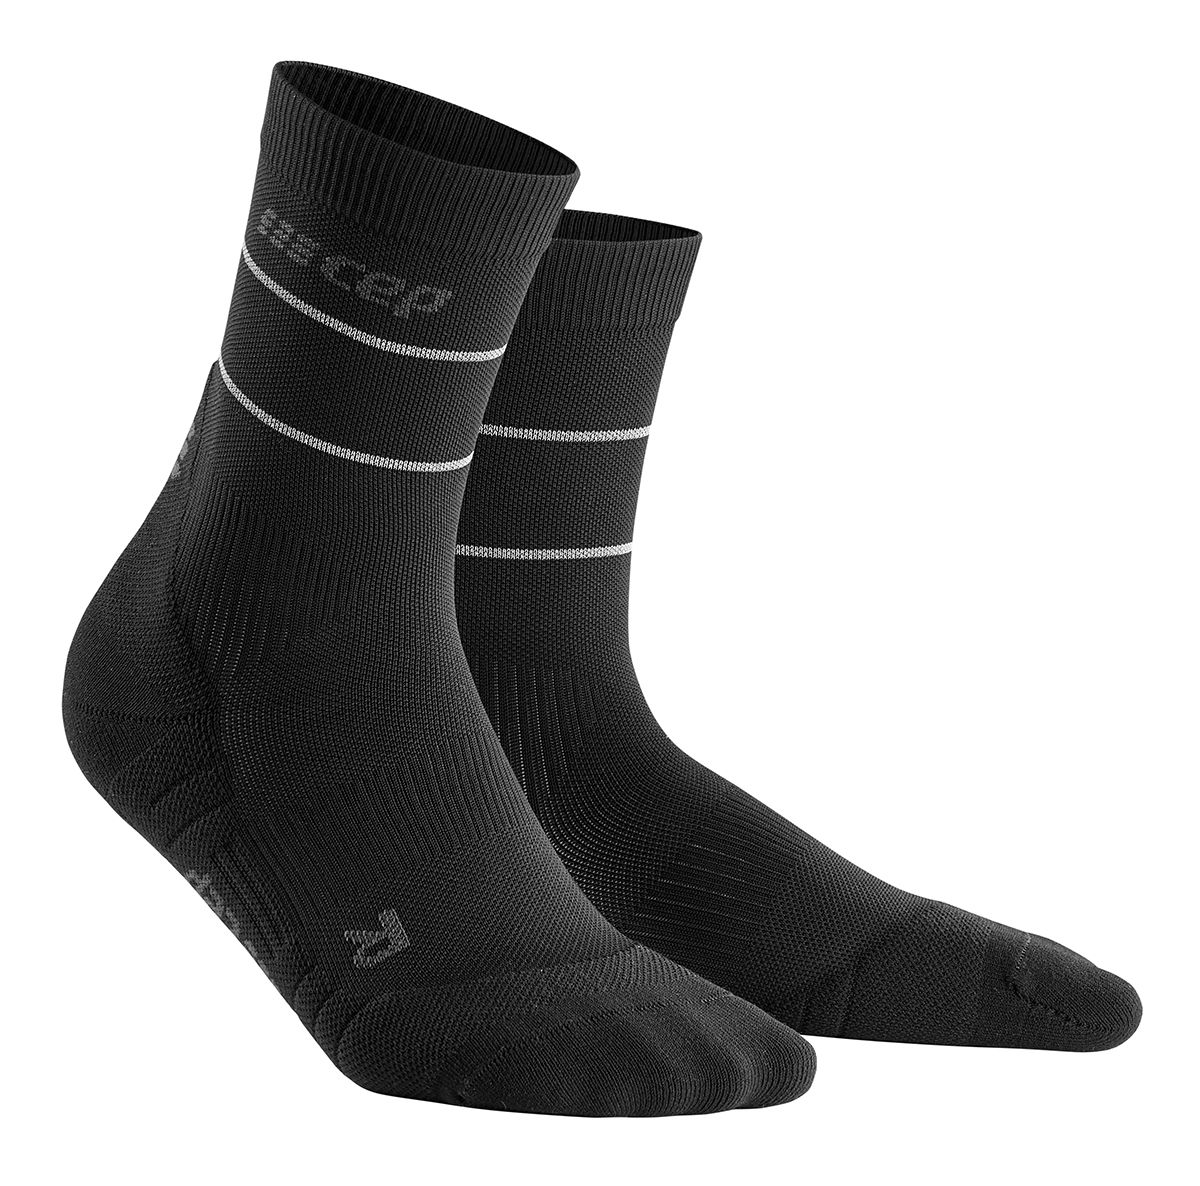 Мужские компрессионные носки CEP Reflective мужские компрессионные носки calcetines компрессионные мужские носки